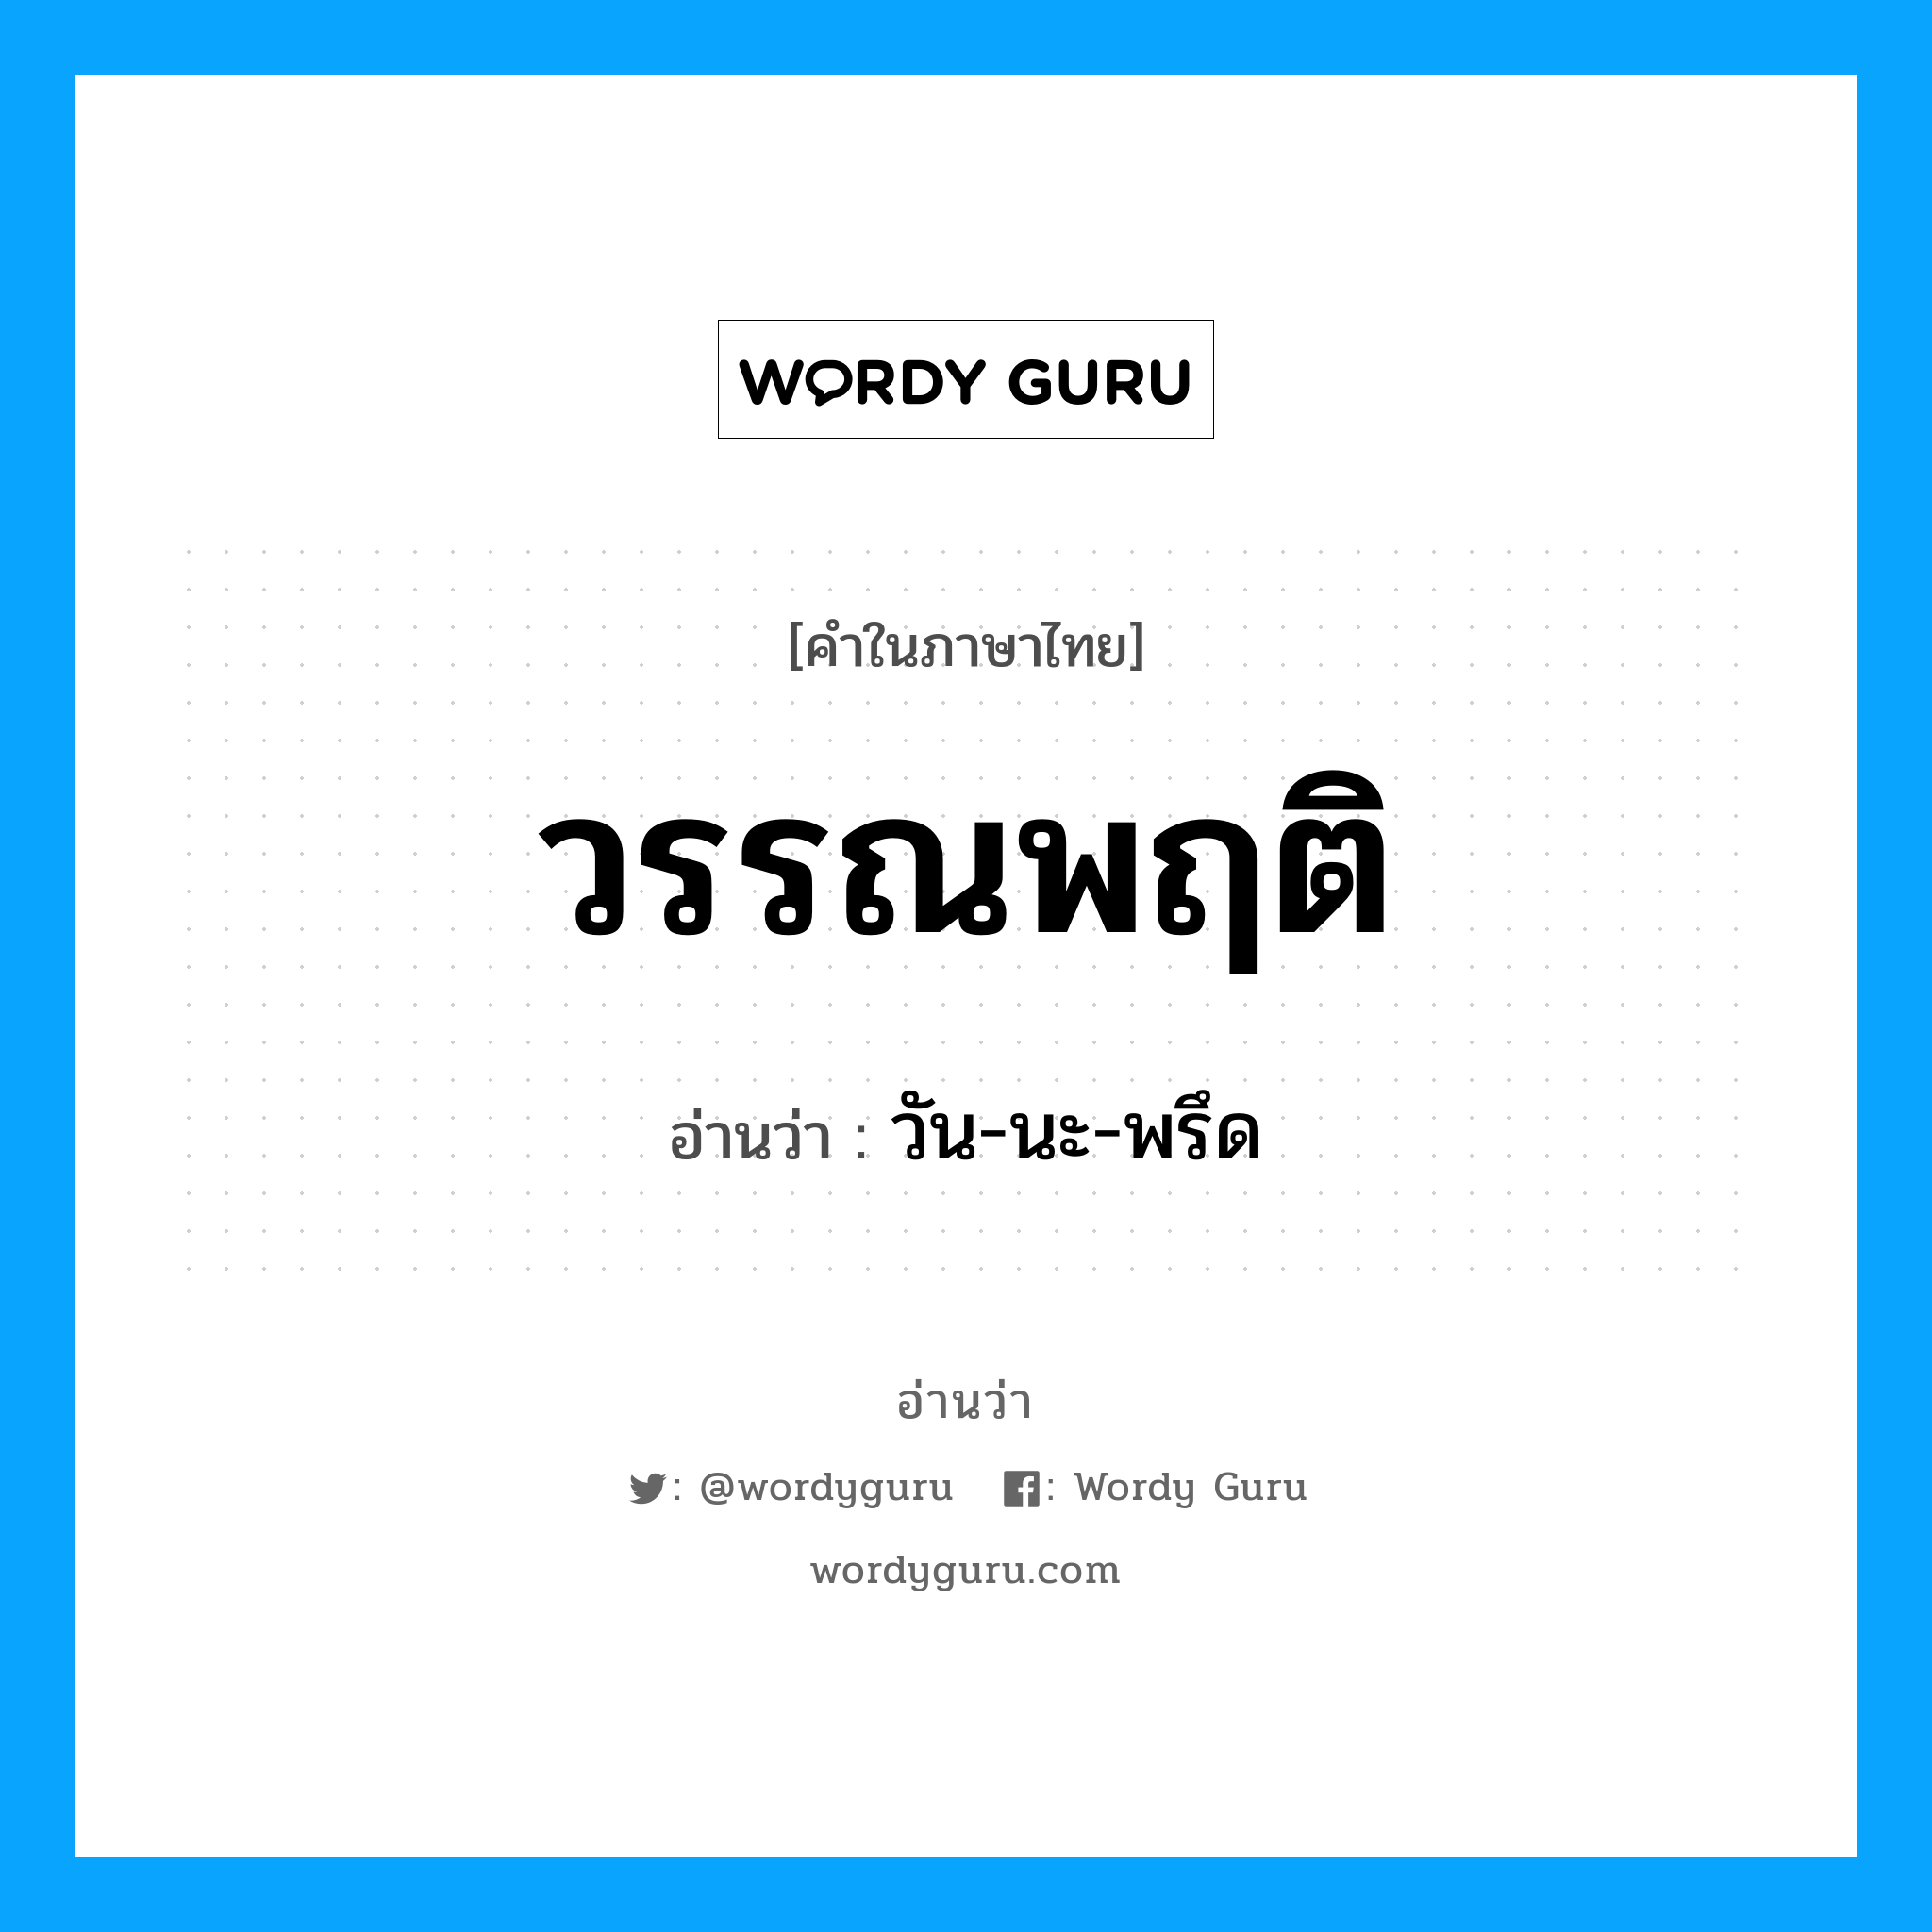 วัน-นะ-พรึด เป็นคำอ่านของคำไหน?, คำในภาษาไทย วัน-นะ-พรึด อ่านว่า วรรณพฤติ